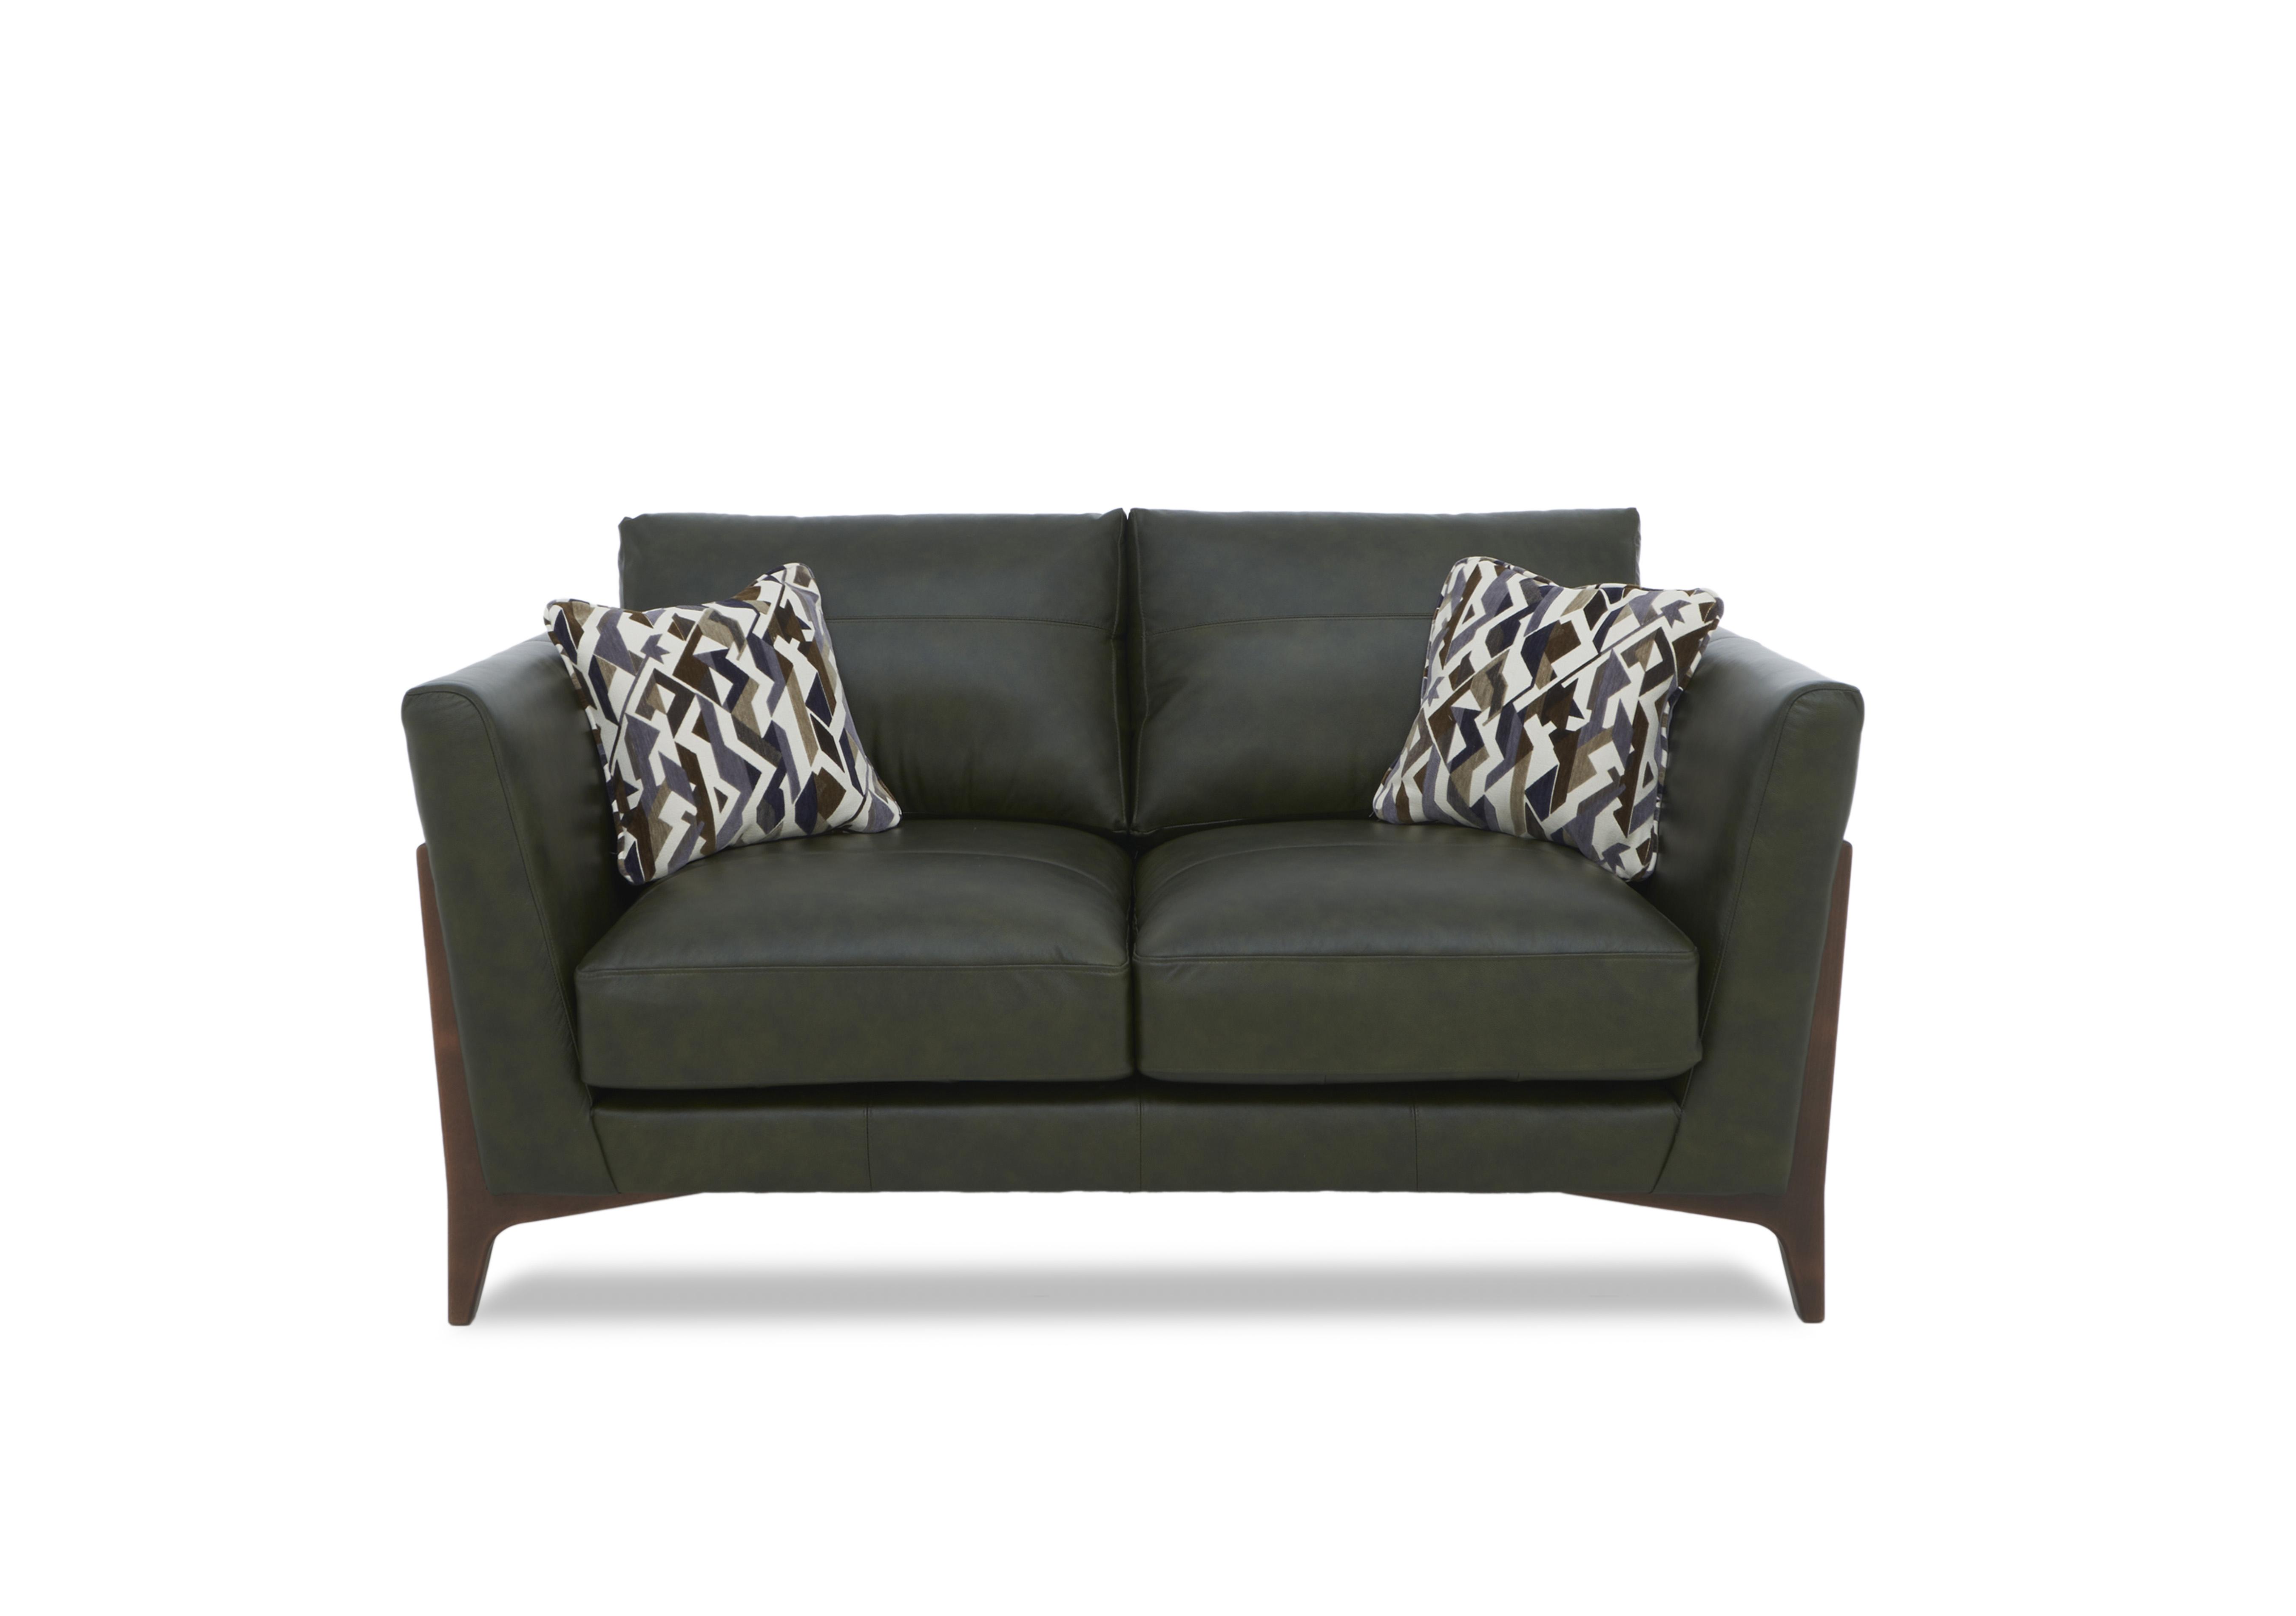 Iris 2 Seater Leather Sofa in Turino Green Wa Ft on Furniture Village